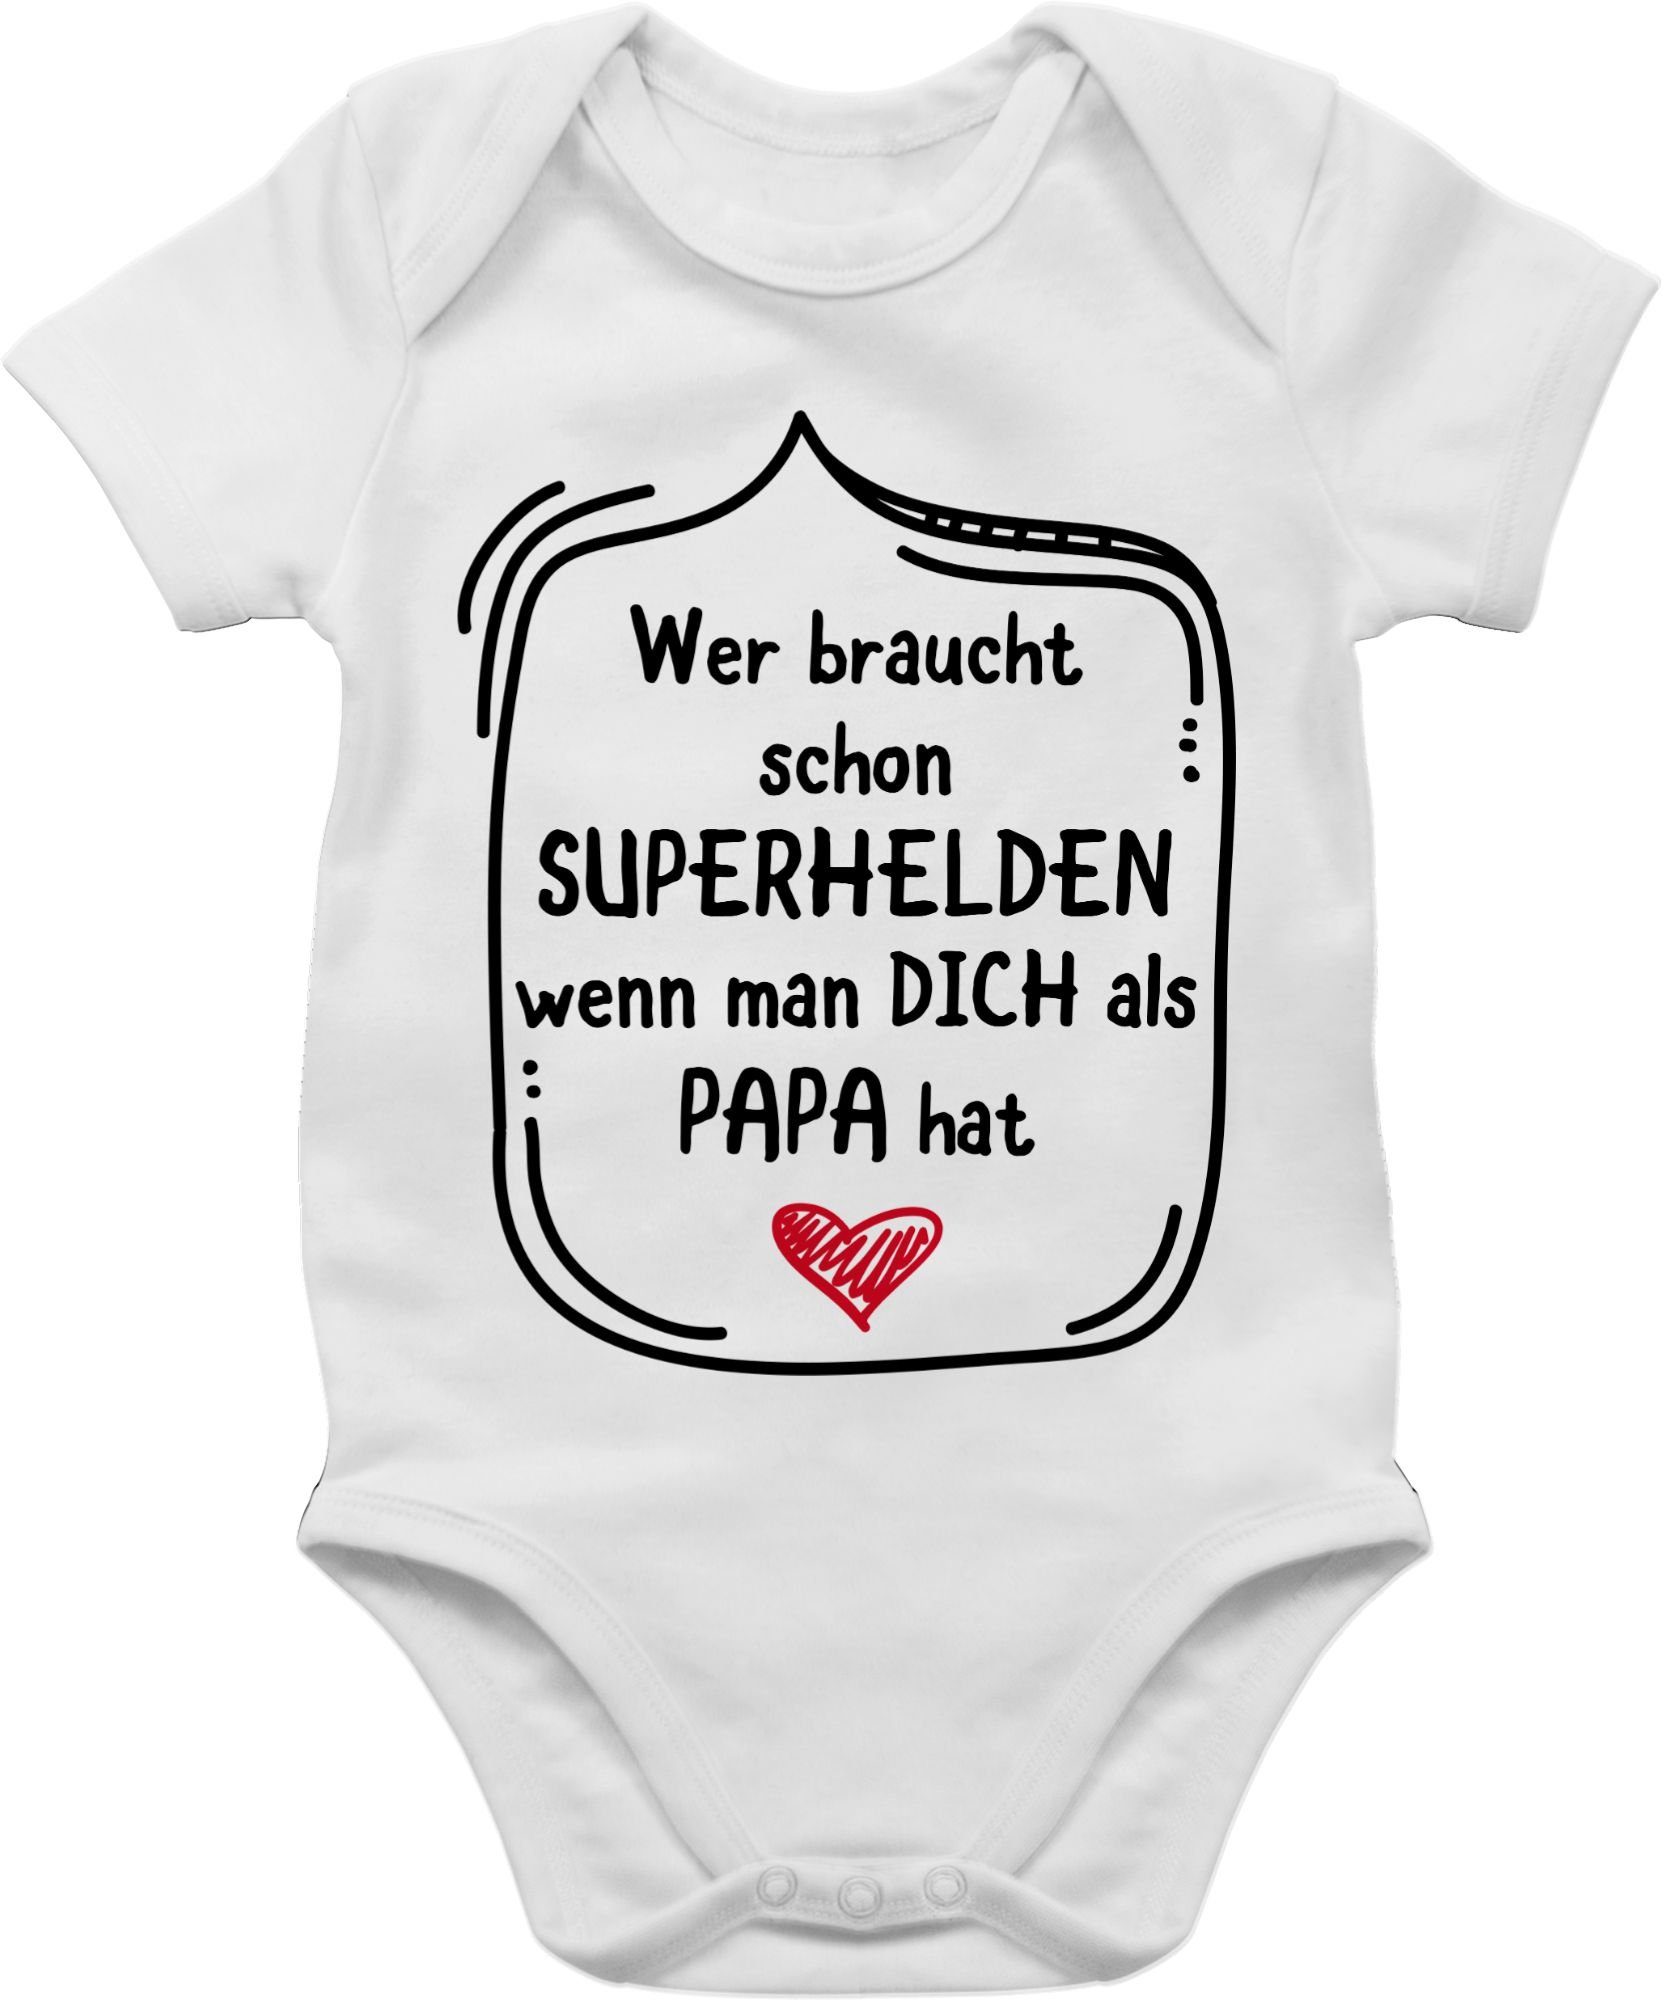 Shirtracer Shirtbody man dich Superhelden Vatertag Baby schon Weiß als Wer Papa wenn hat Geschenk braucht 1